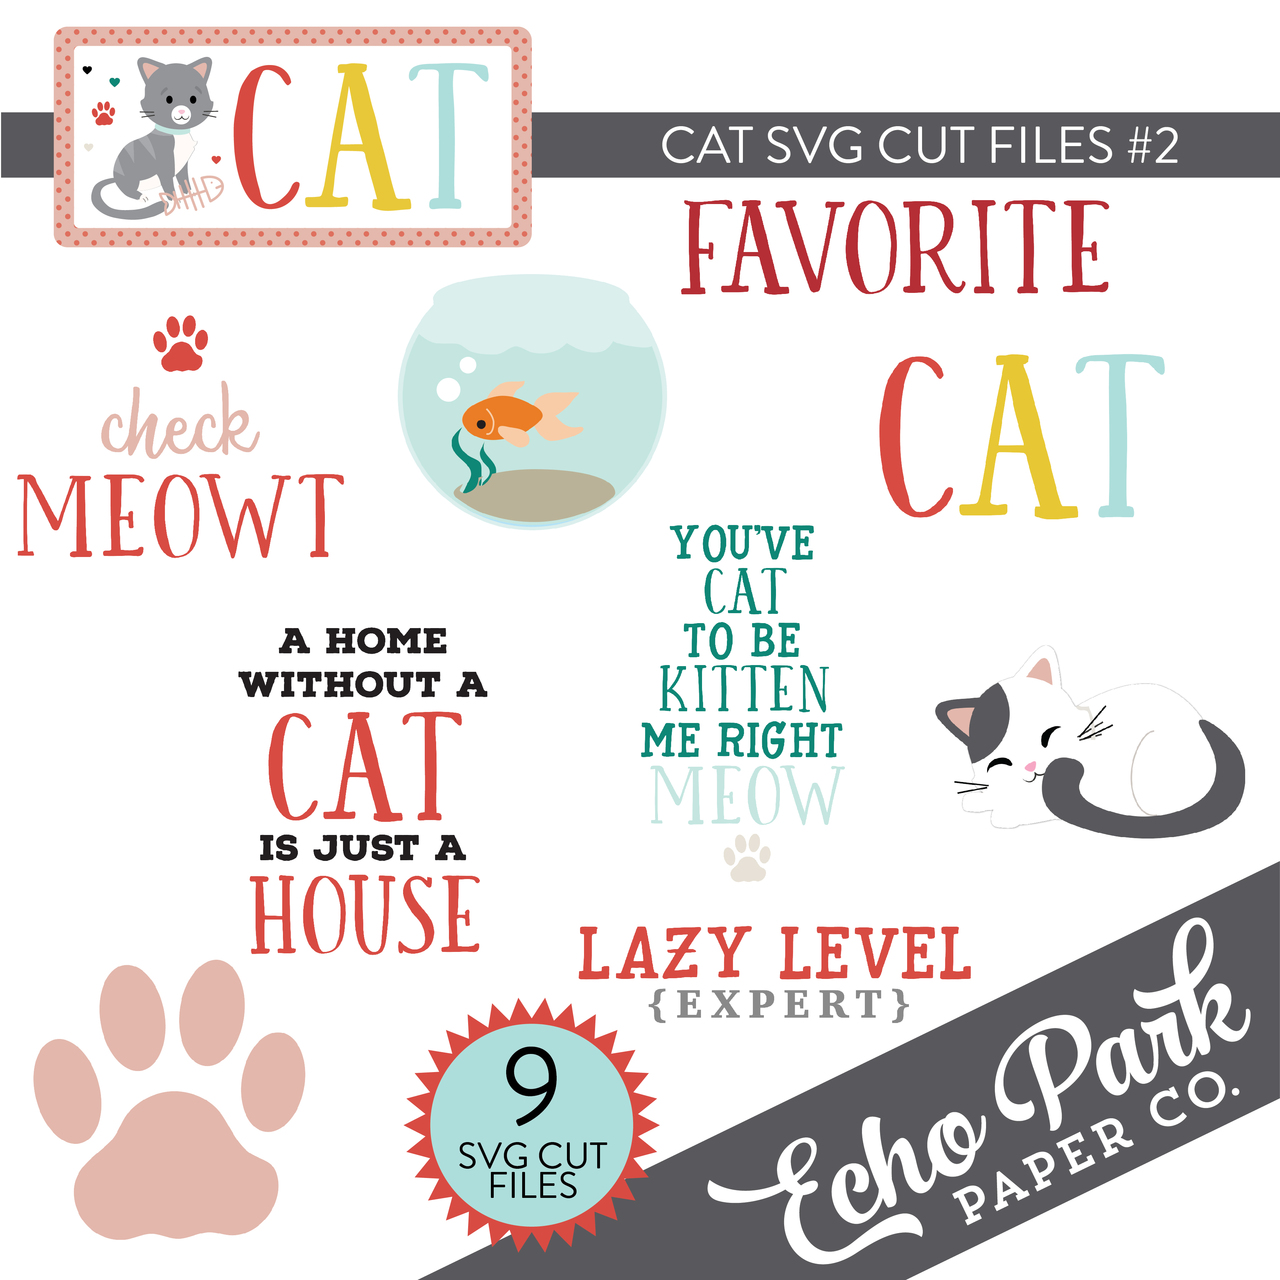 Cat SVG Cut Files #2